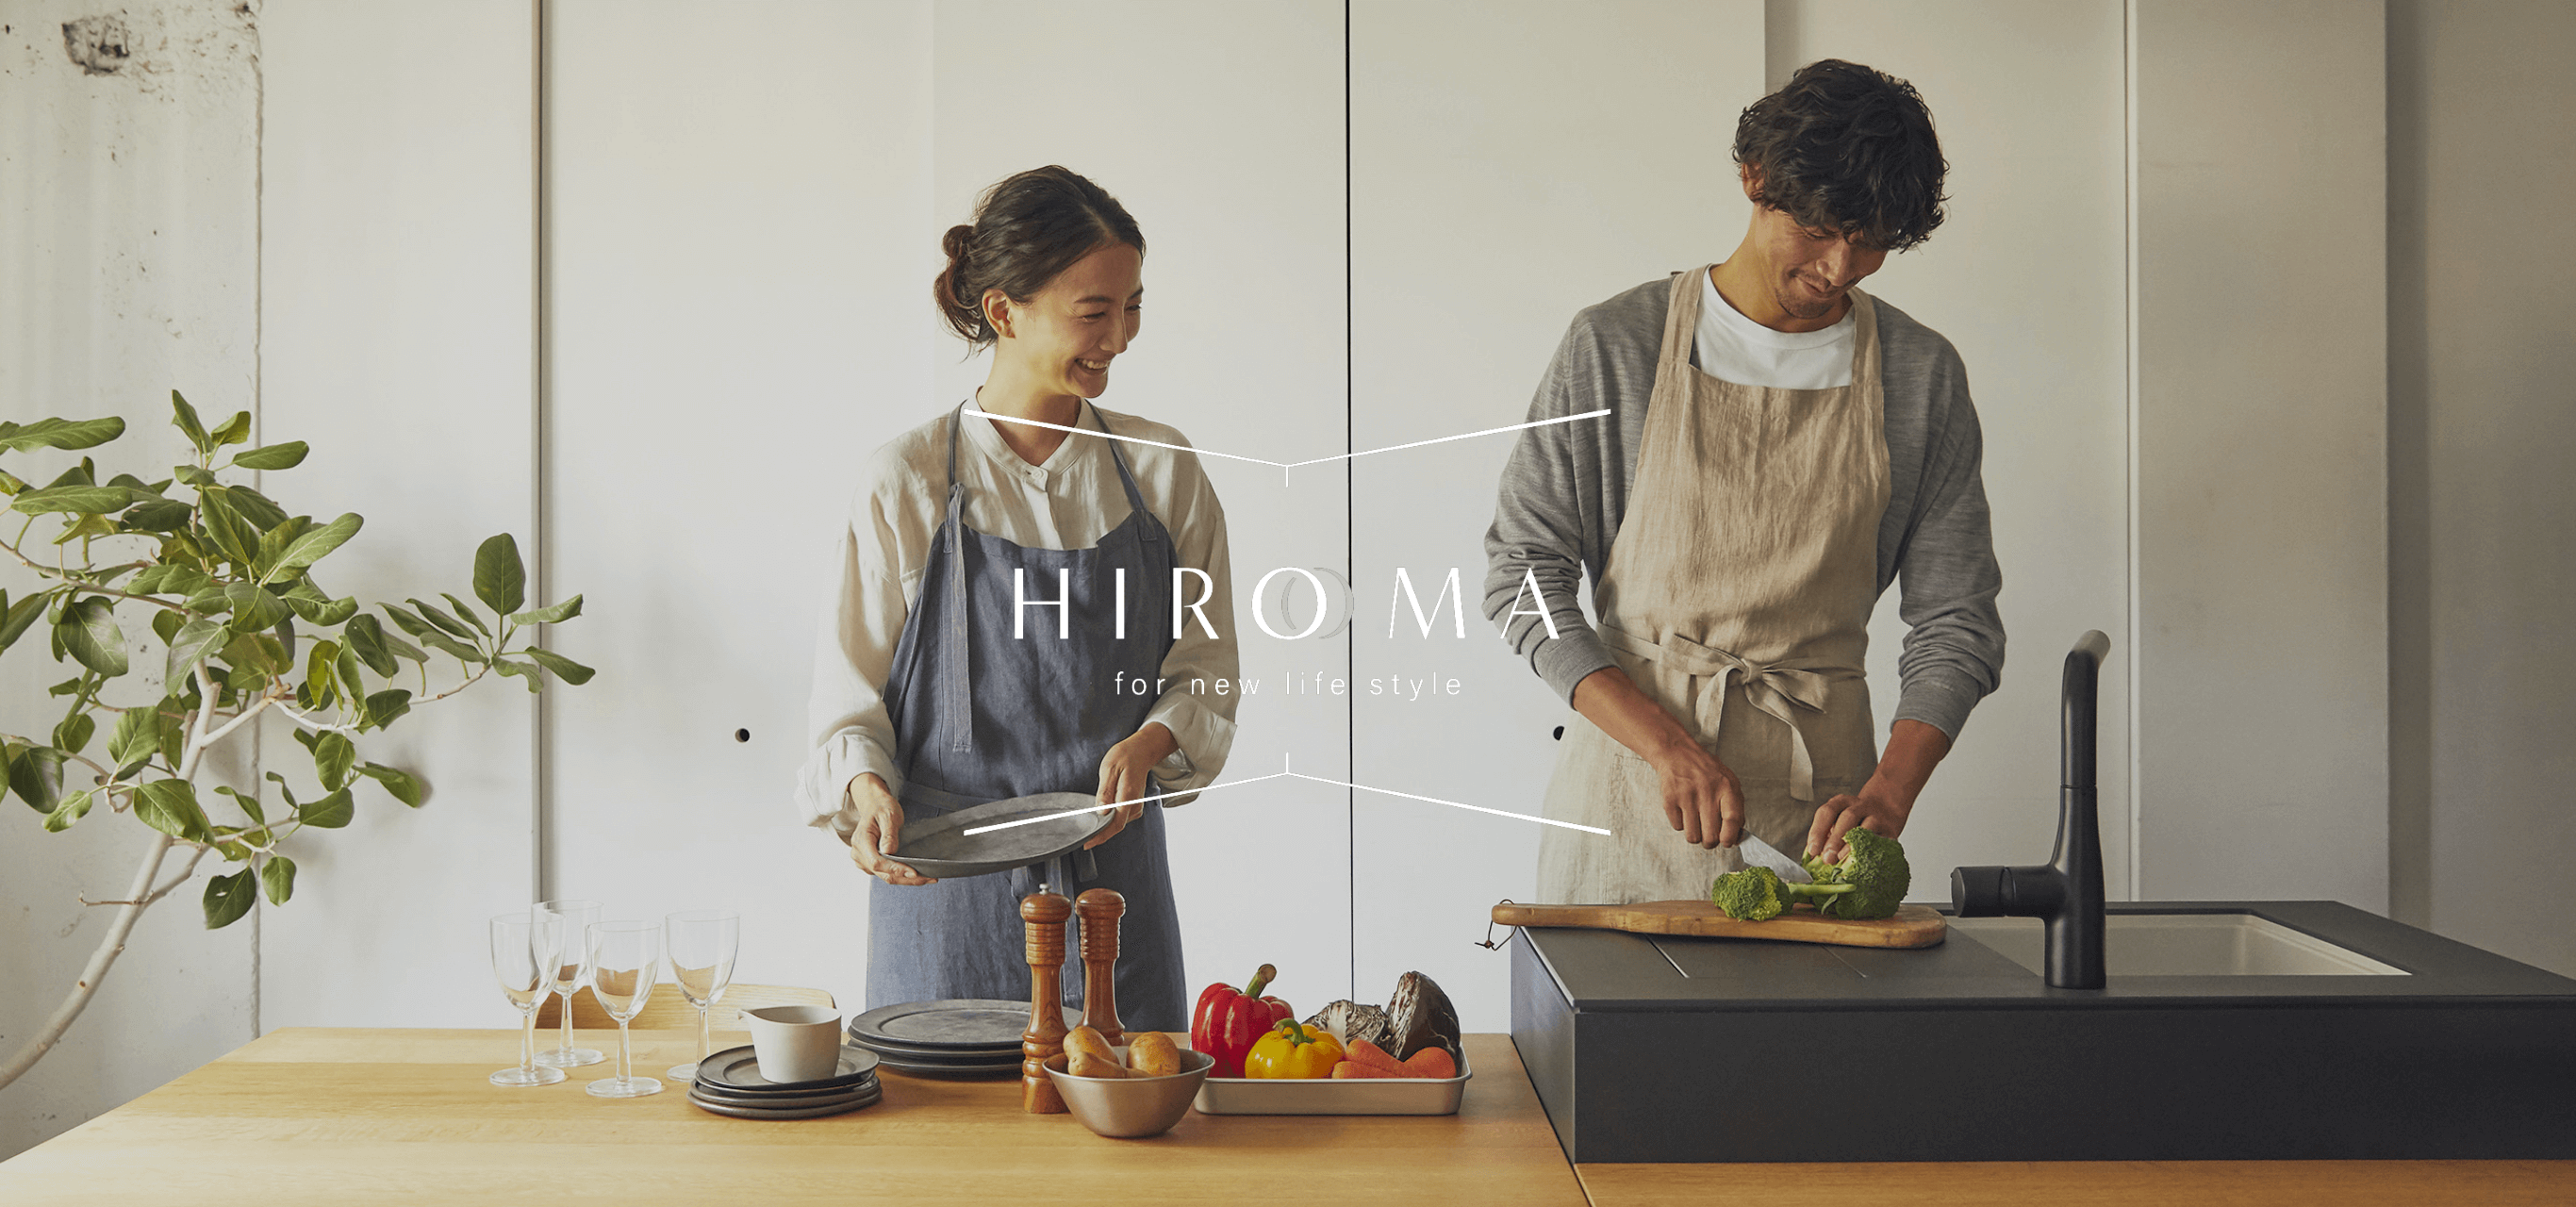 「HIROMA for new life style」のタイトルと、２人の男女が料理をしている写真。サイトのメインビジュアルにもなっている。